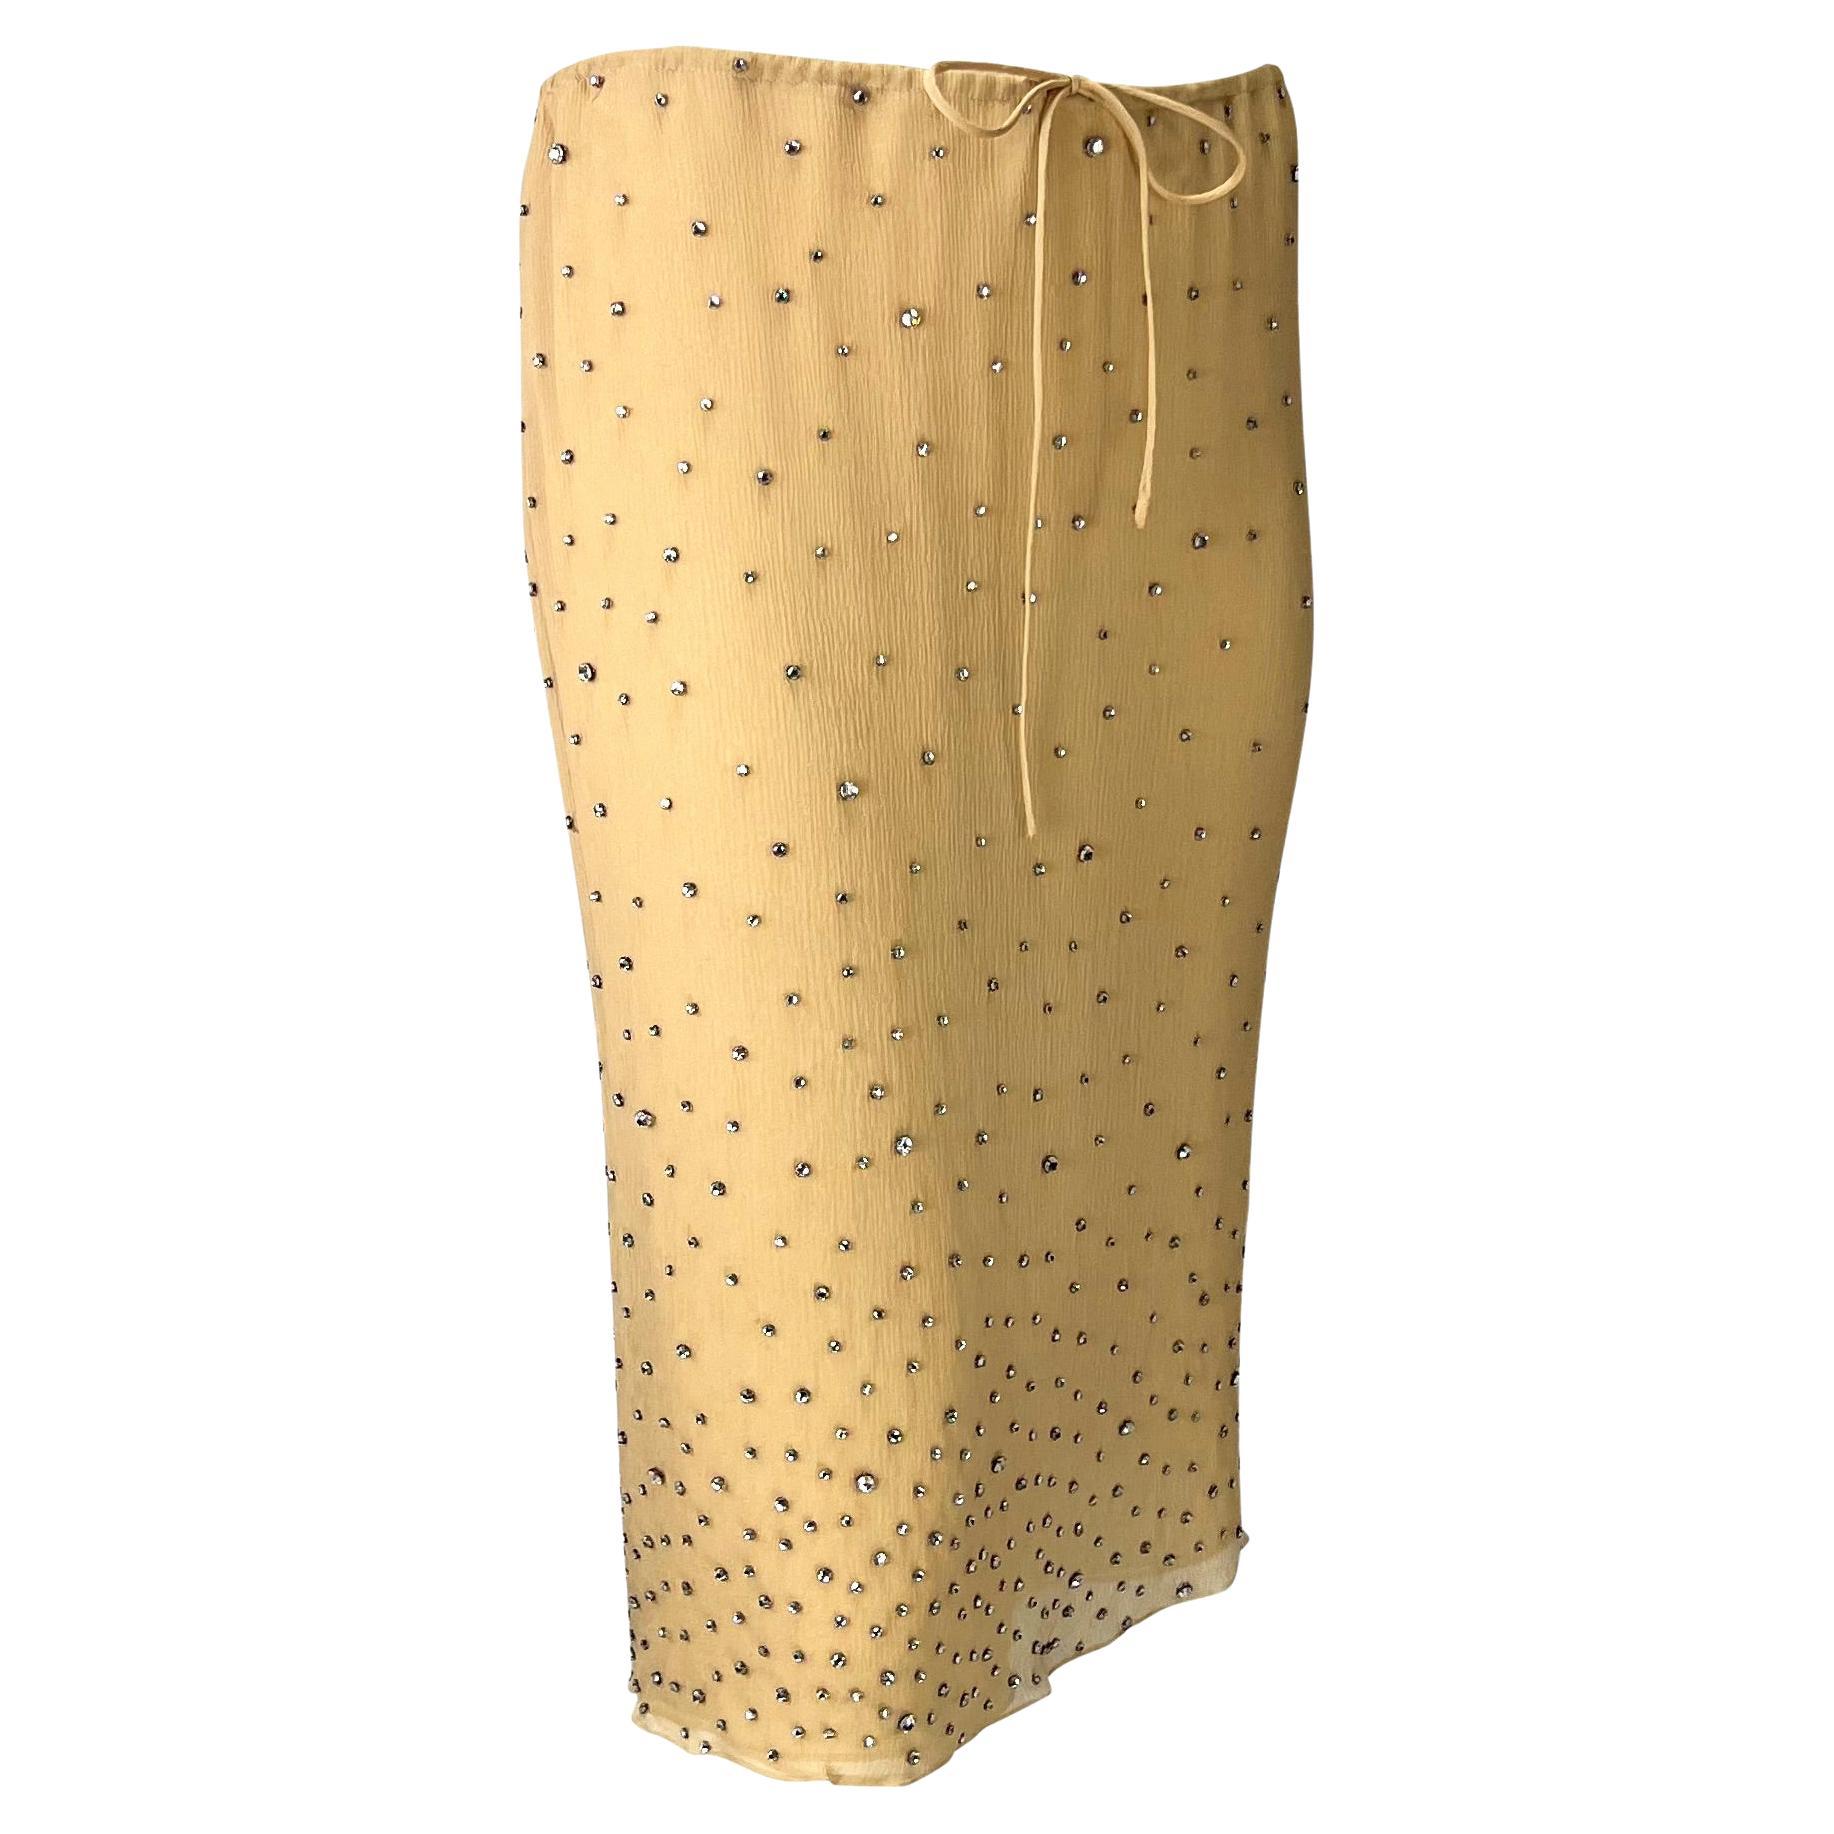 S/S 2000 Gucci by Tom Ford Rhinestone Sheer Beige Crepe Silk Skirt 1